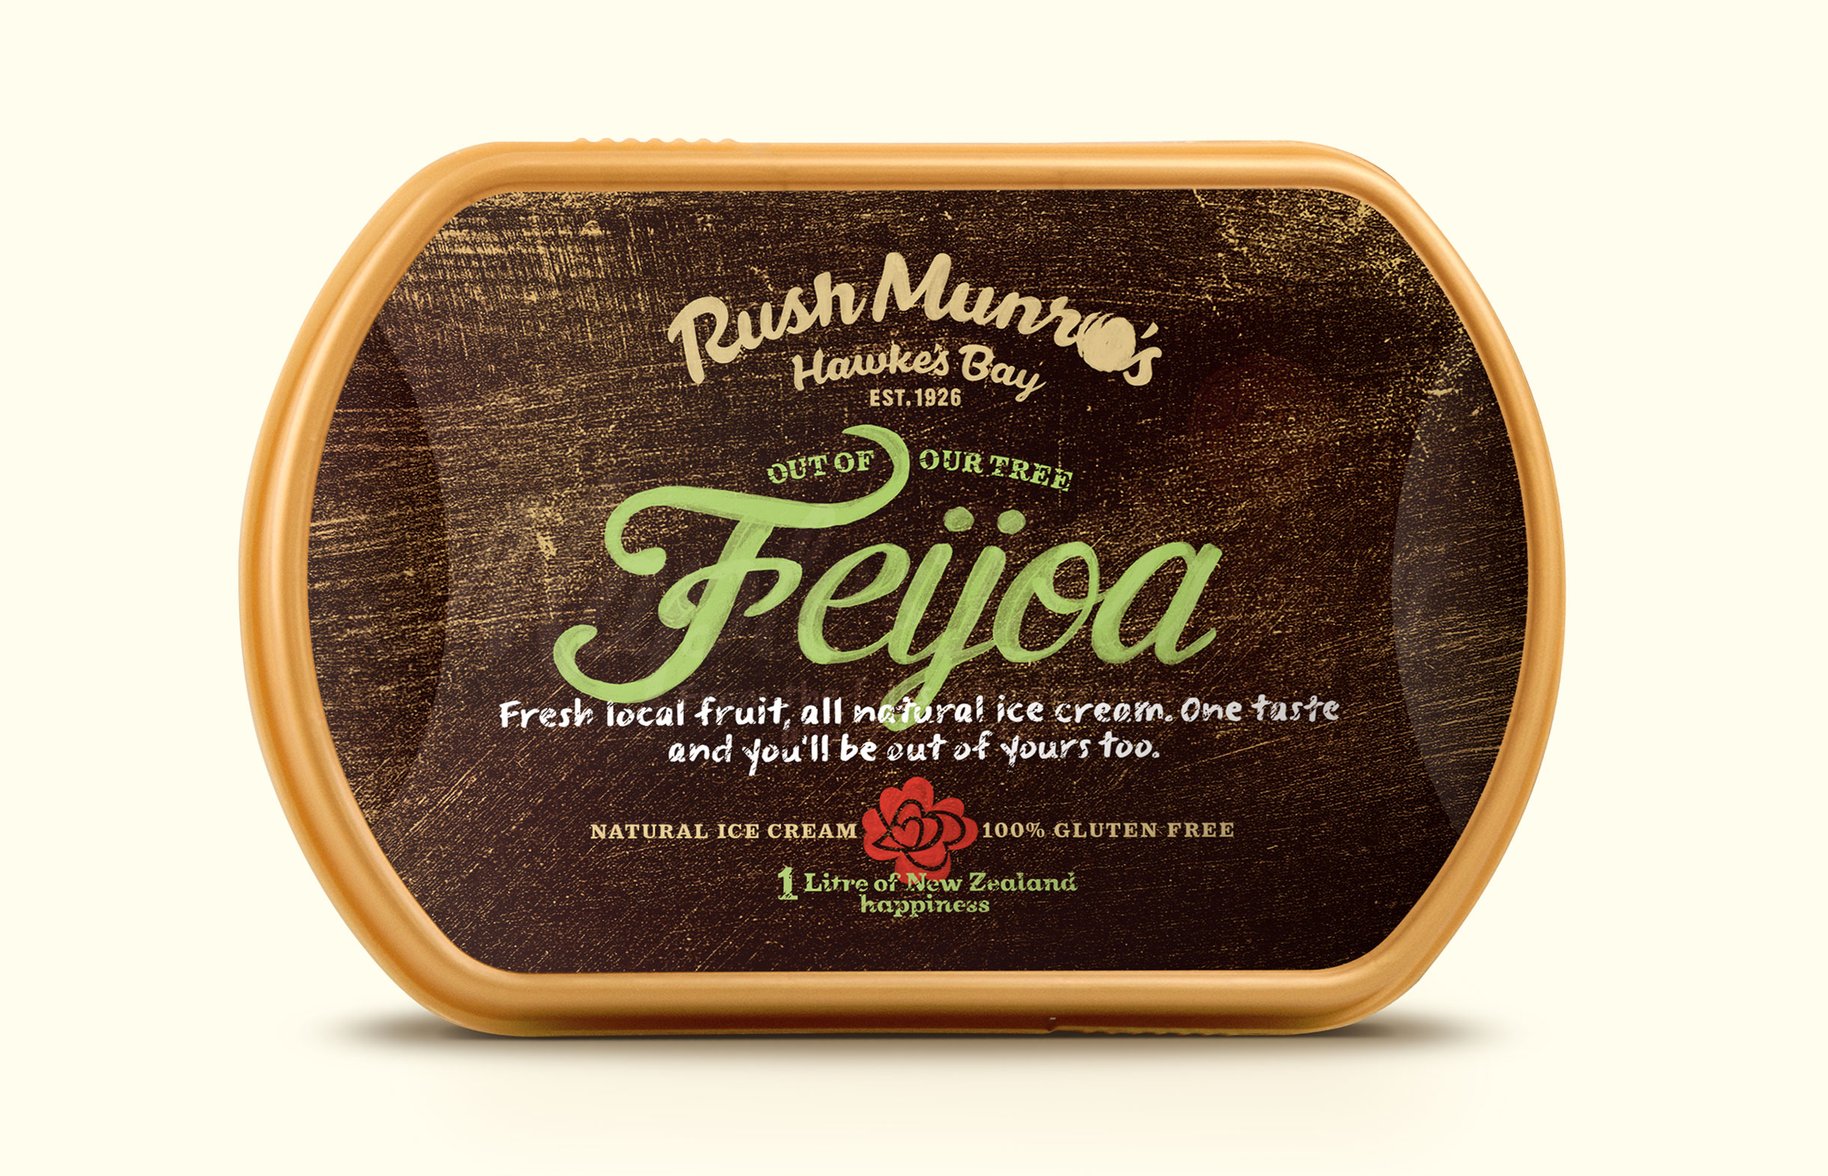 Rush Munro's feijoa ice cream packaging 